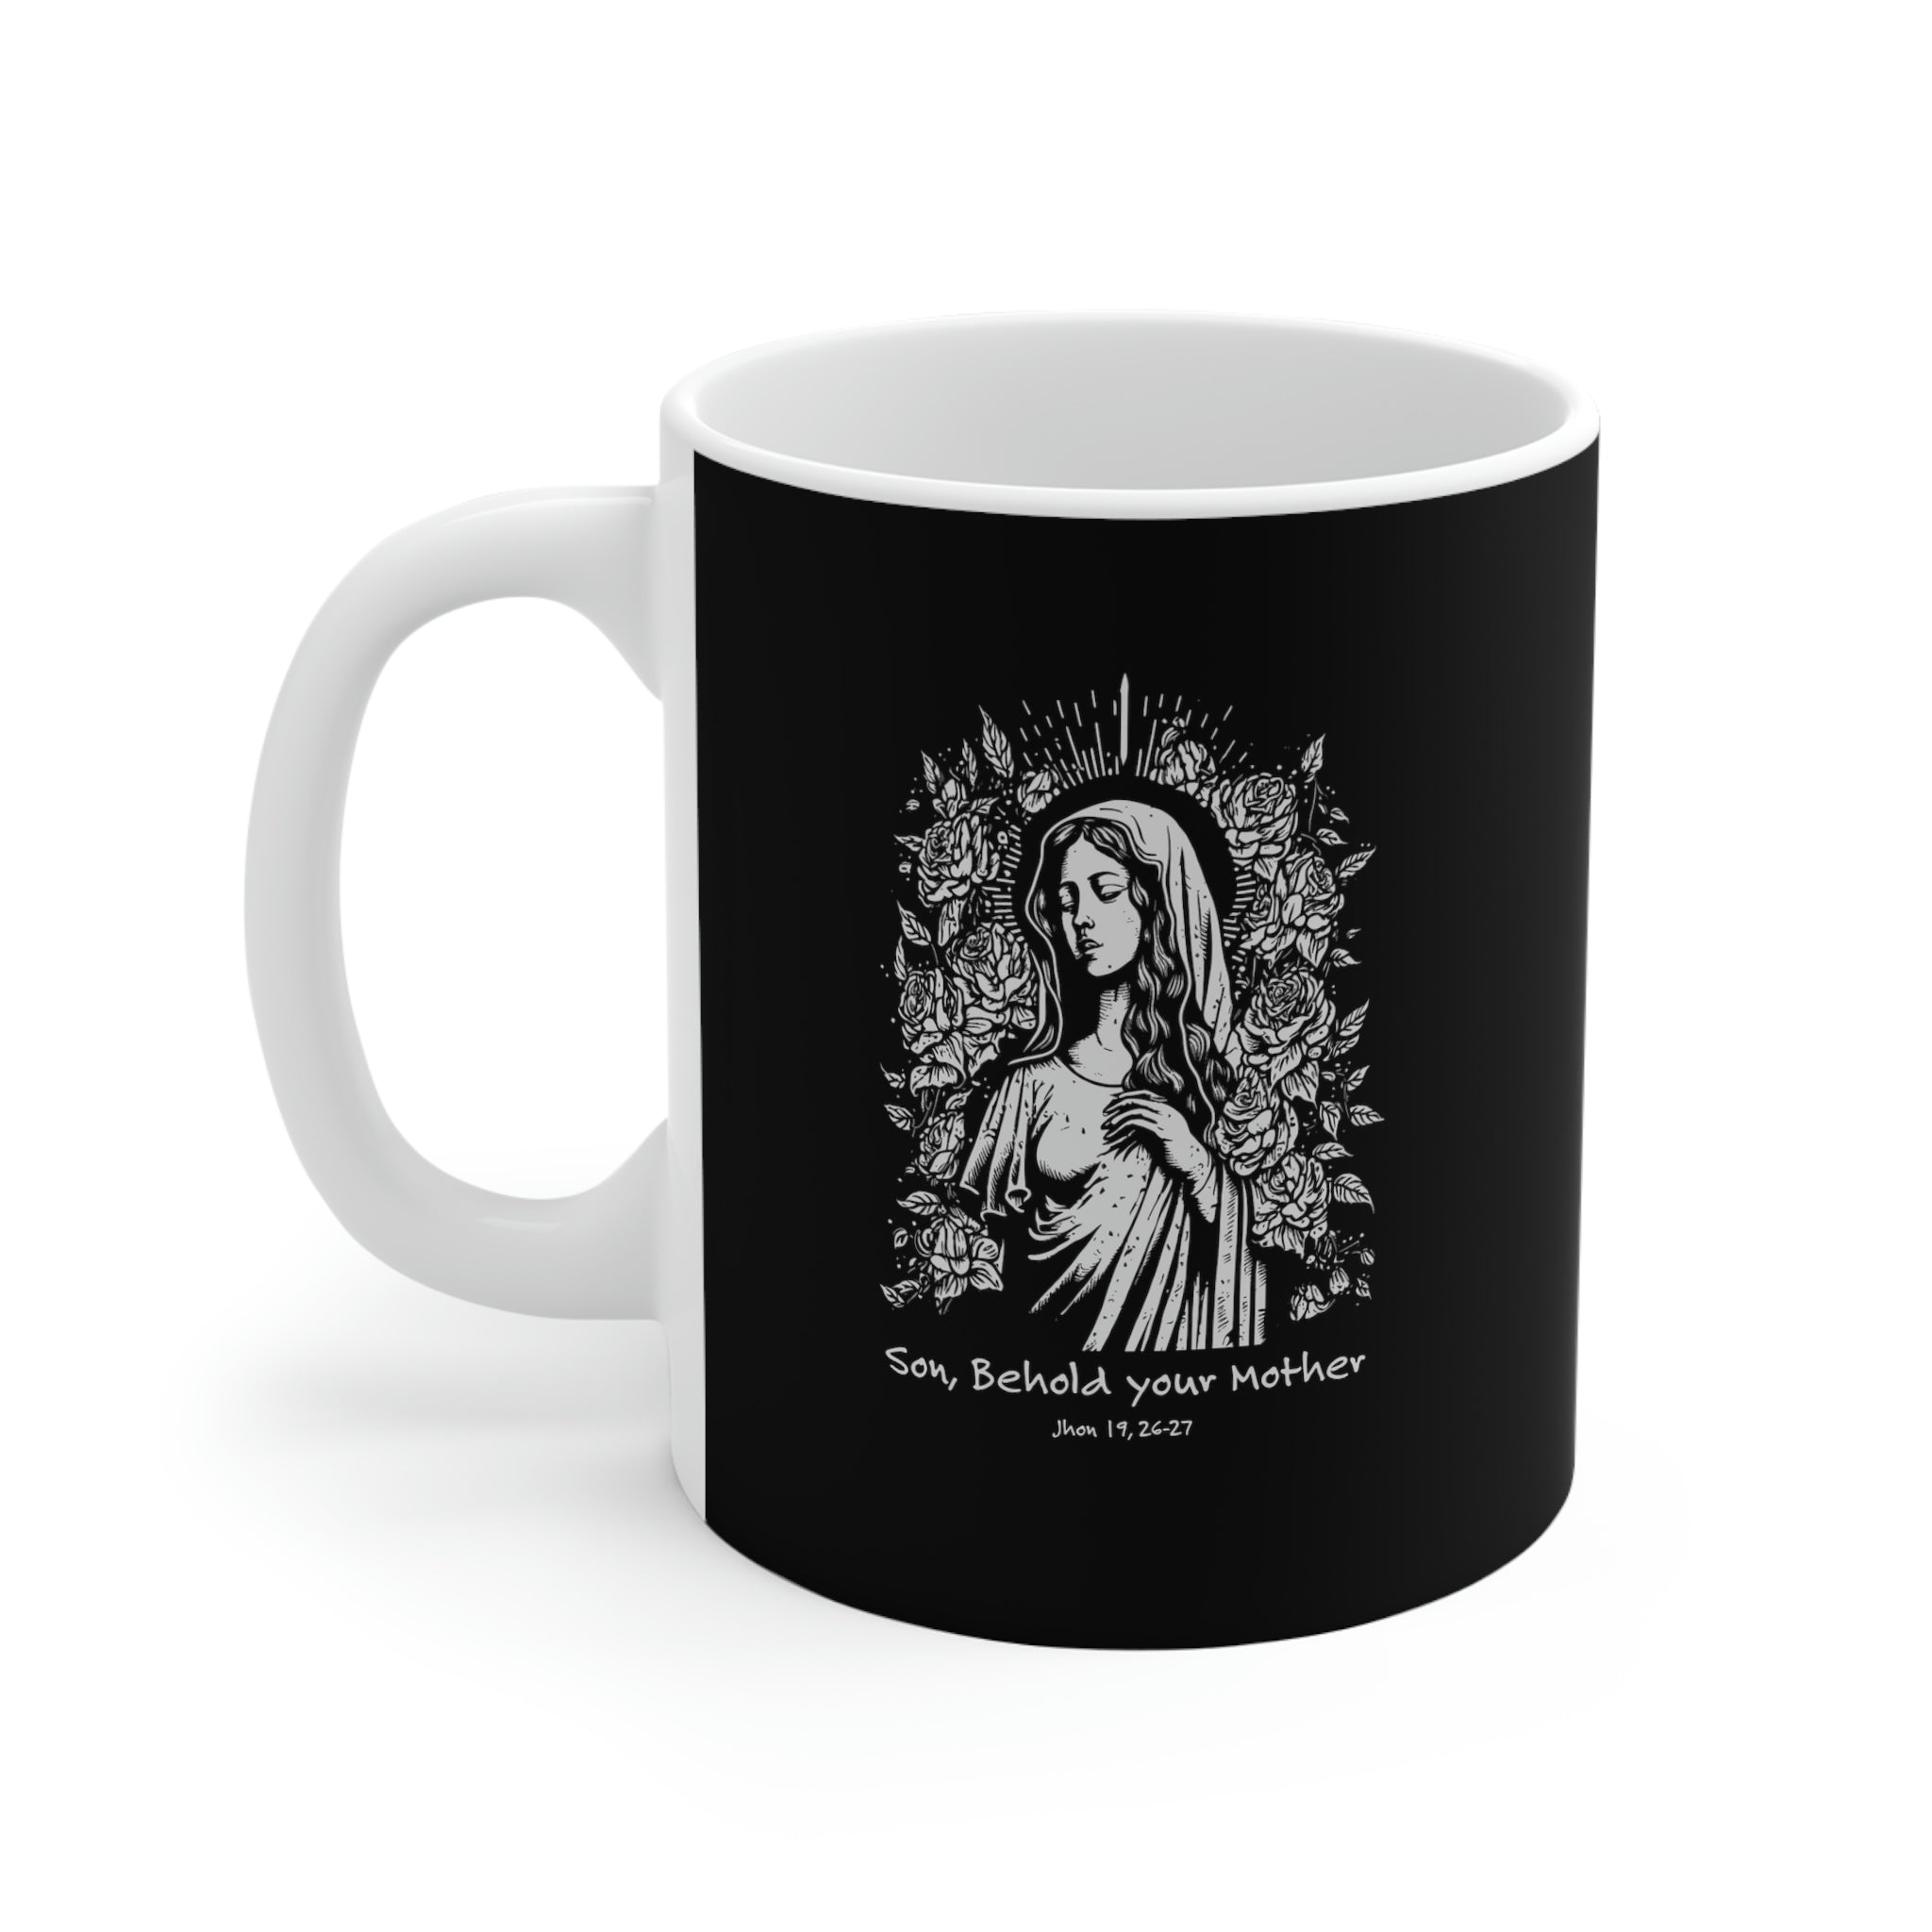 Mary Mother of God Coffee Mug